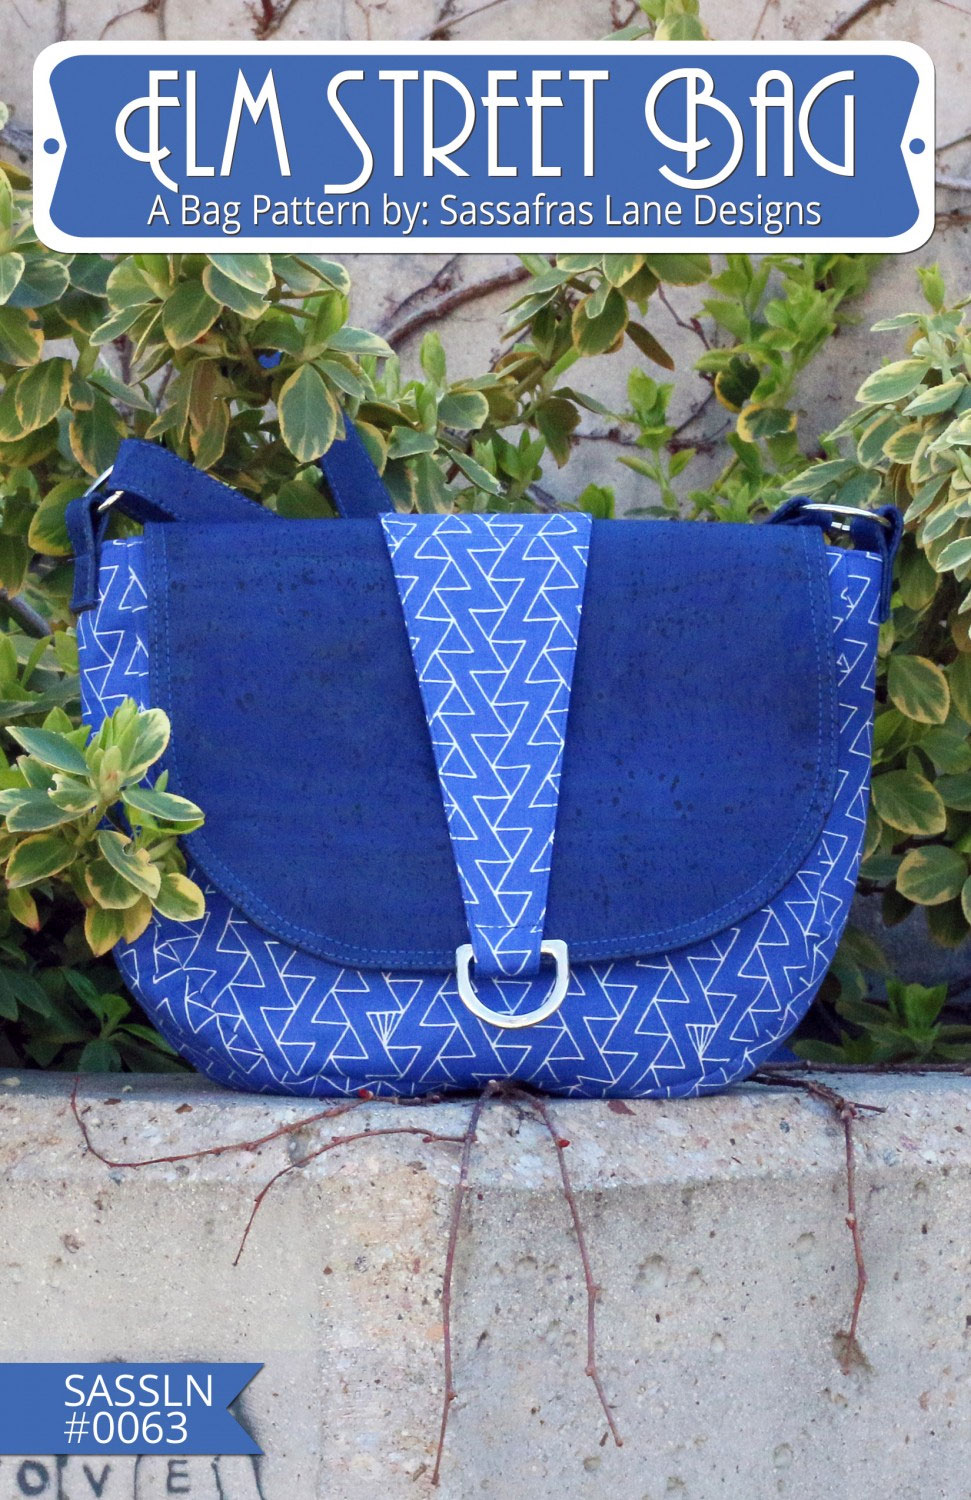 Elm-street-bag-sewing-pattern-Sassafras-Lane-Designs-front